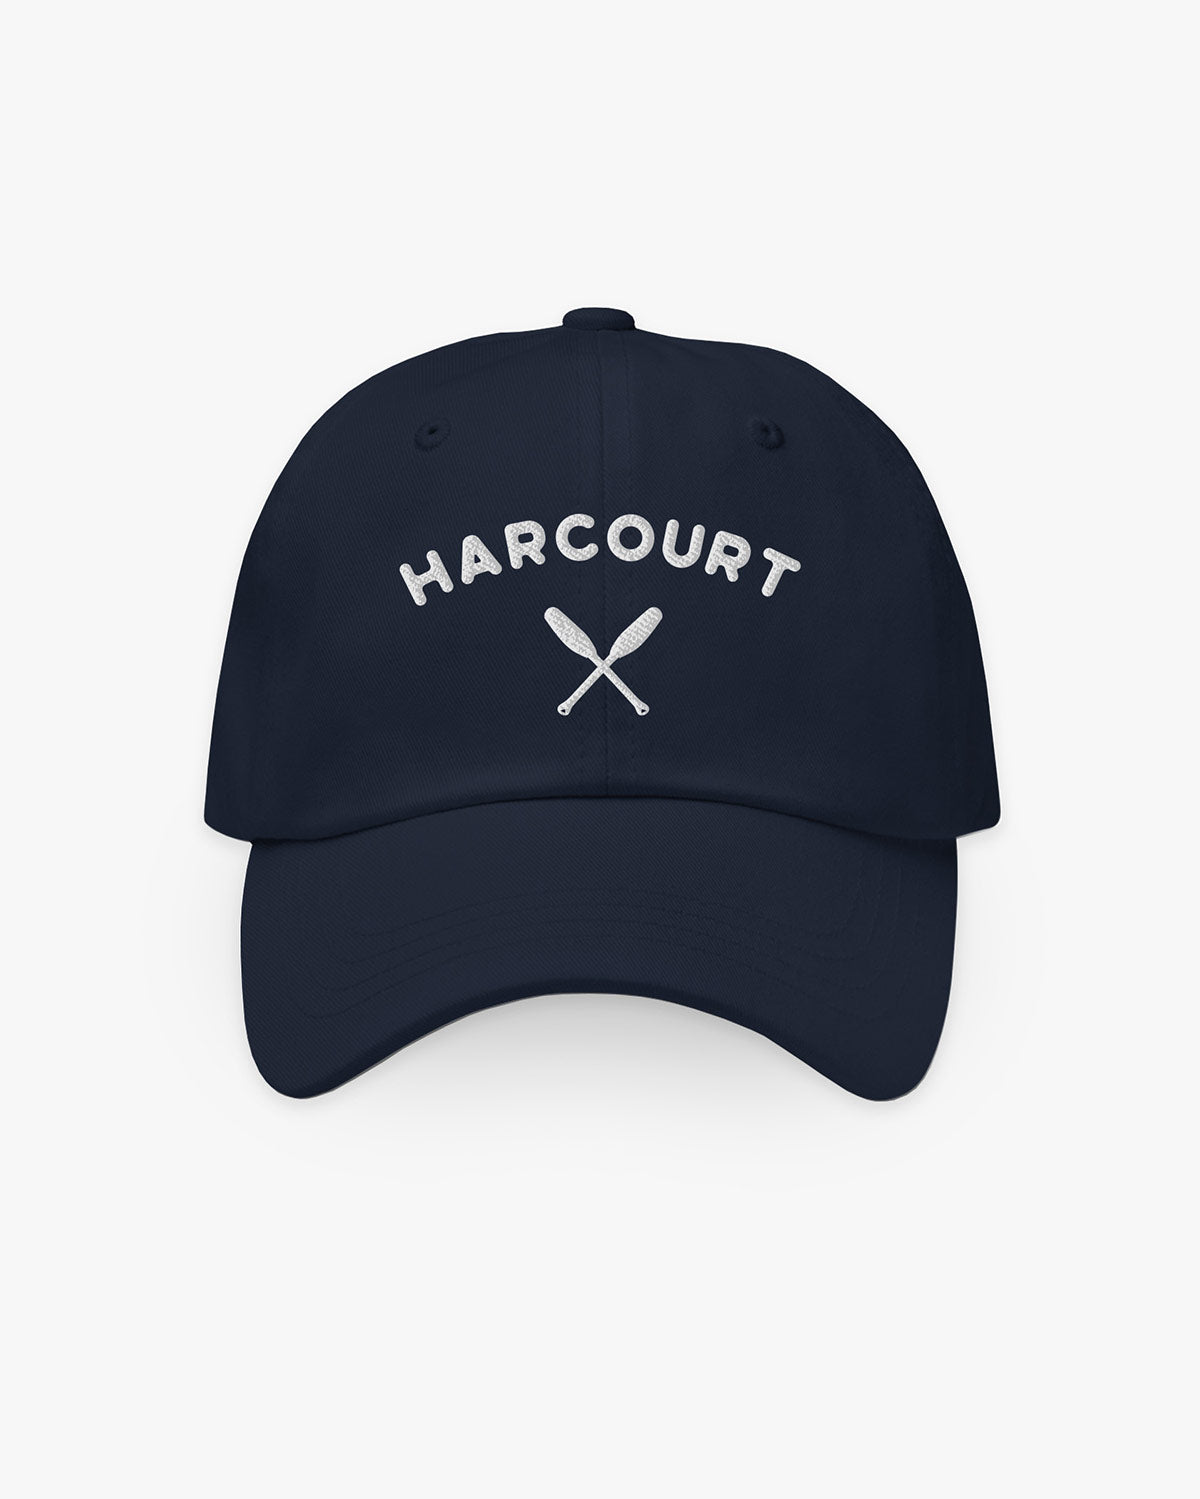 Oars - Harcourt - Hat